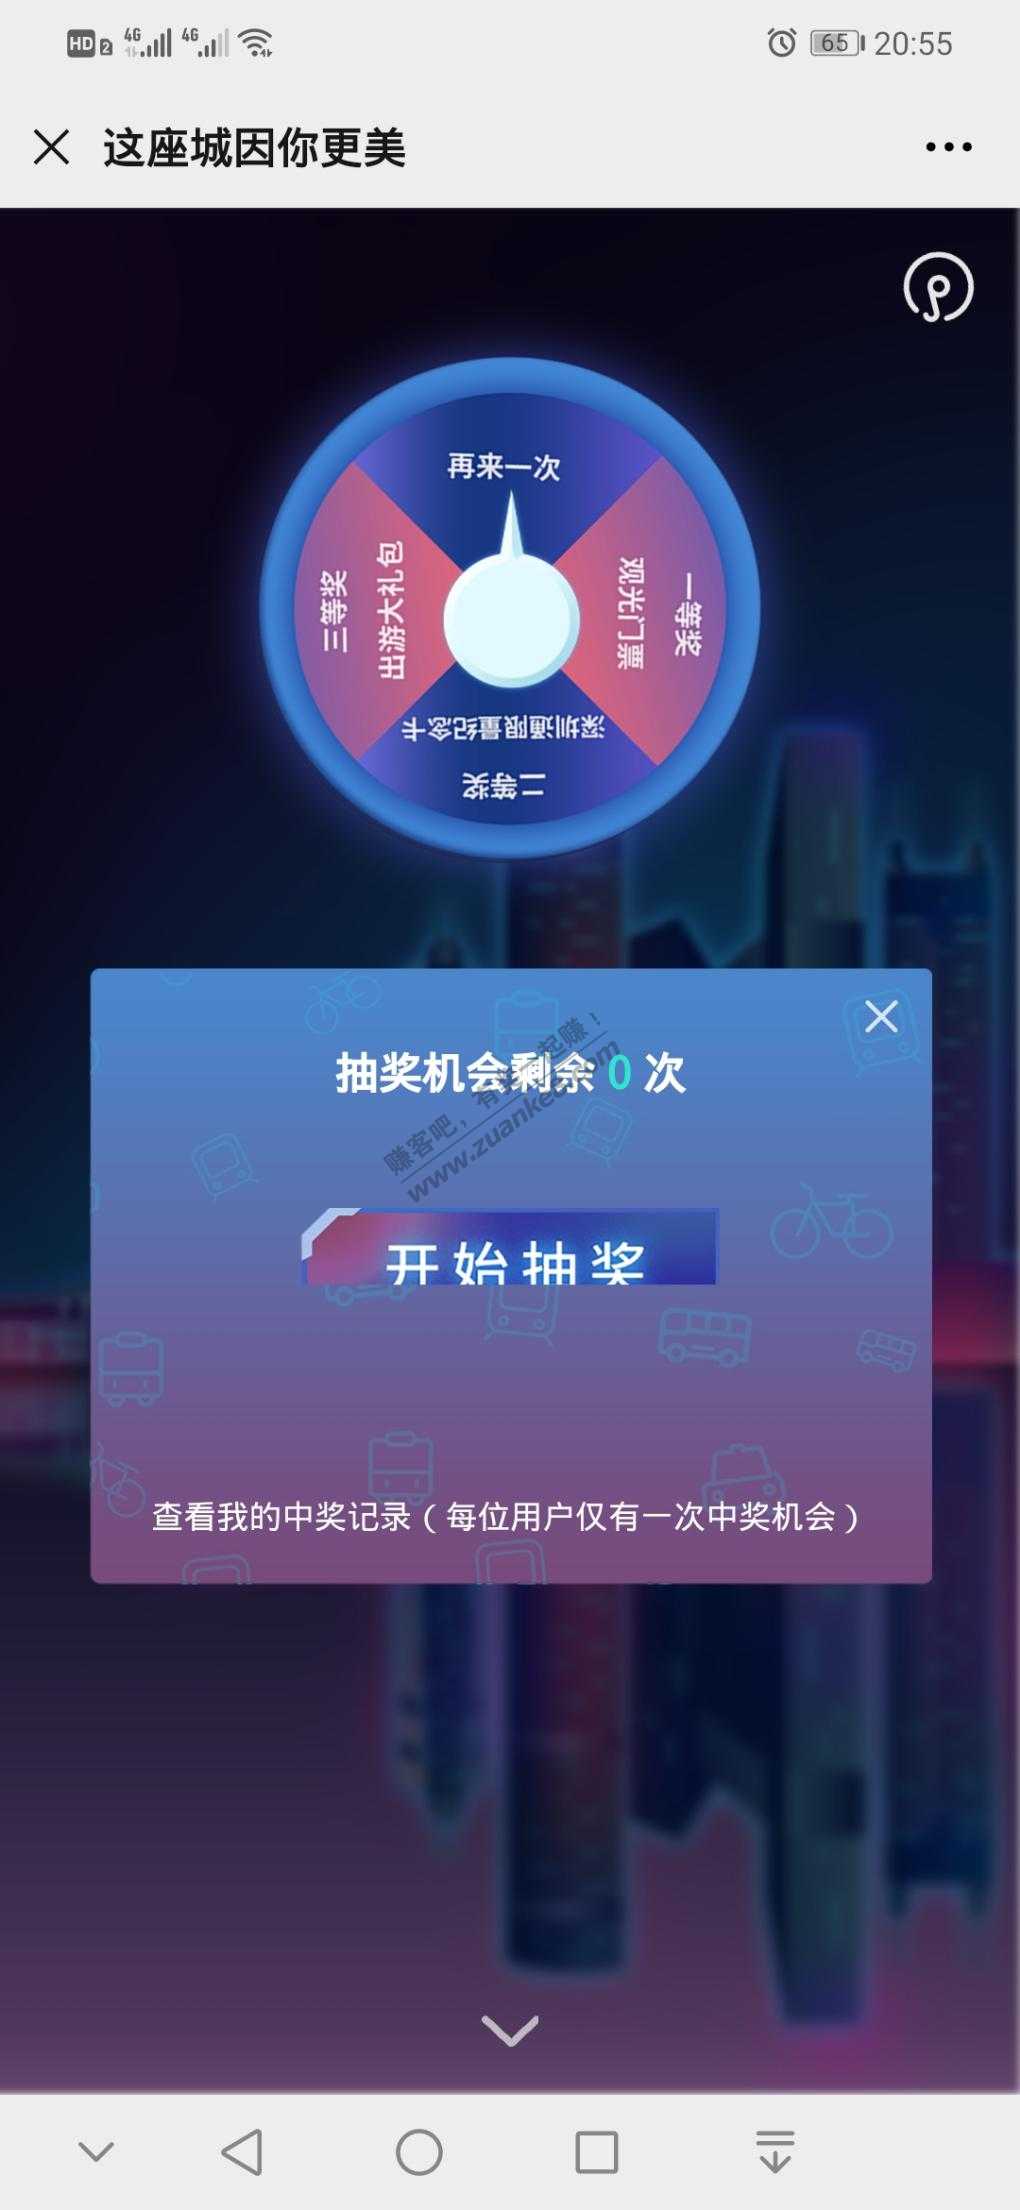 深圳通抽奖-惠小助(52huixz.com)